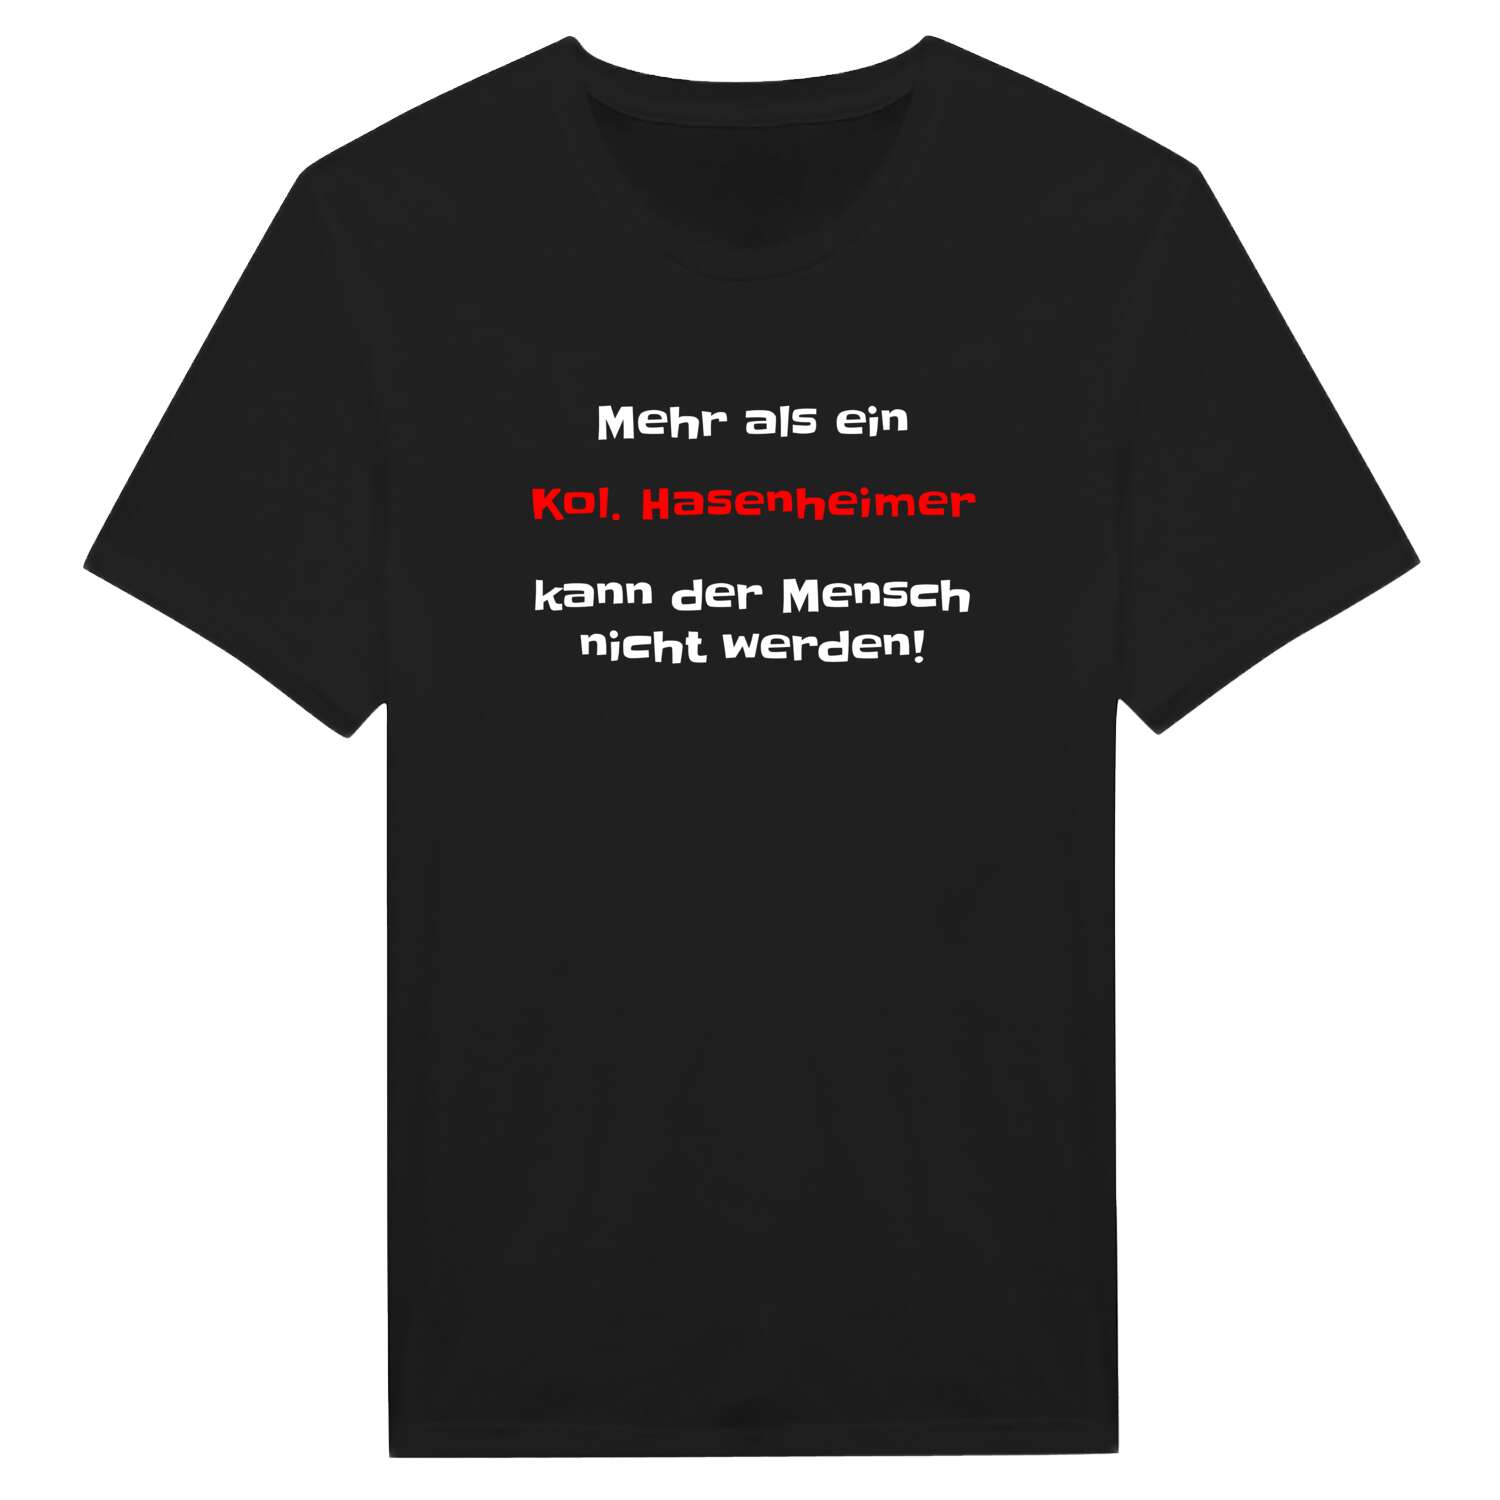 Kol. Hasenheim T-Shirt »Mehr als ein«